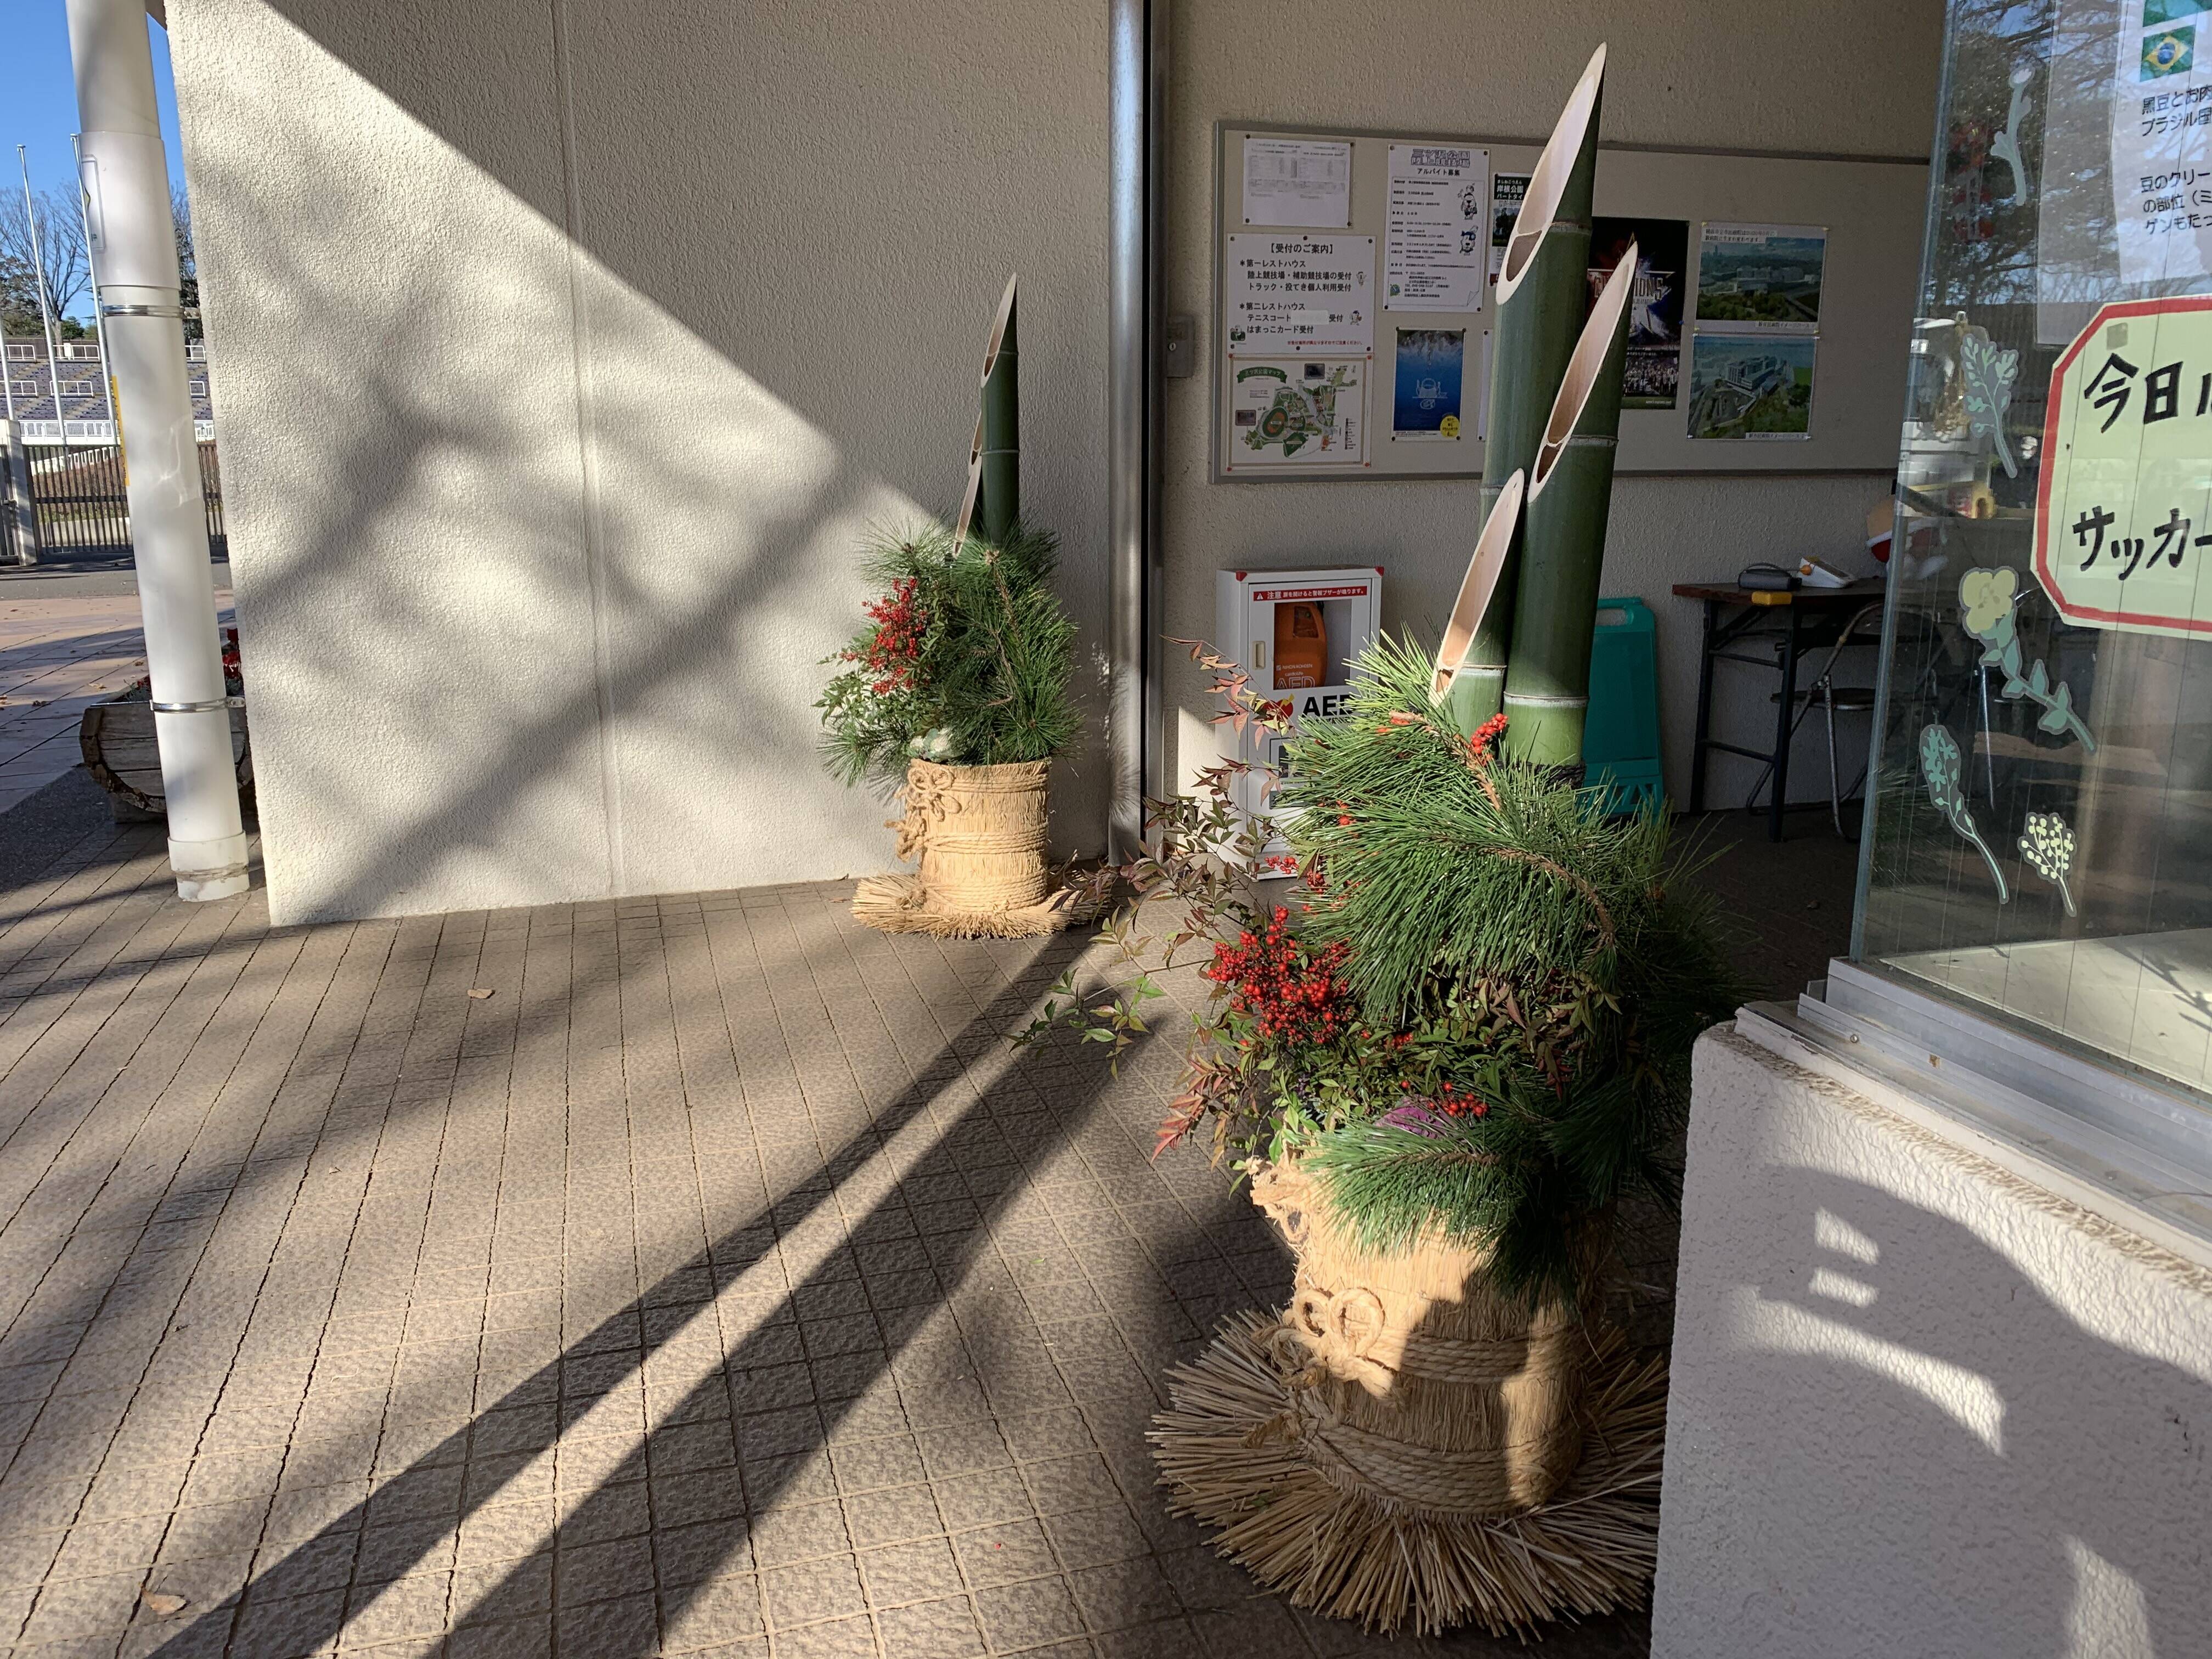 職員手作りの門松を設置しました ブログ 三ツ沢公園公式サイト 公益財団法人 横浜市緑の協会